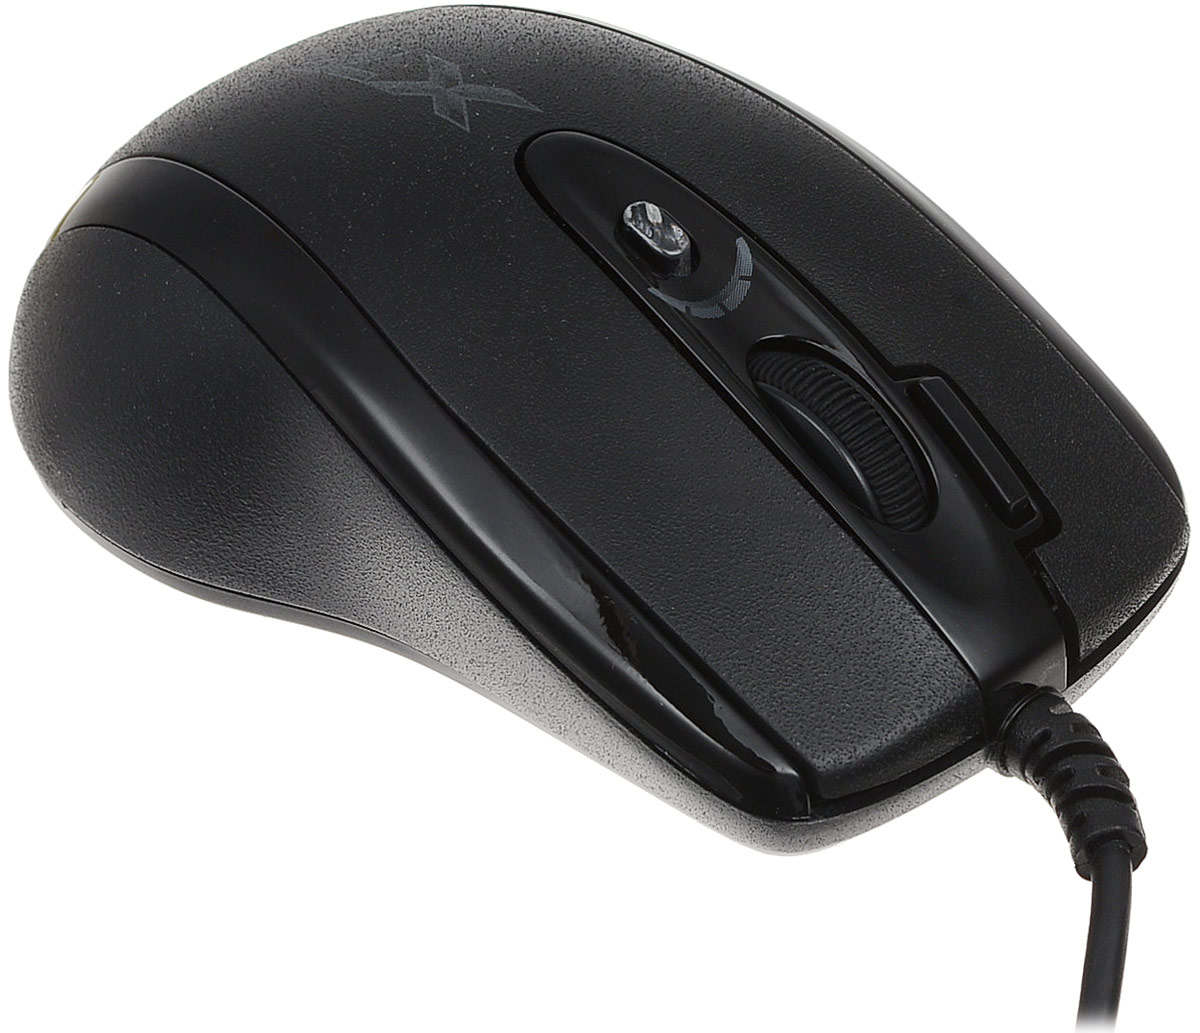 Игровая мышь A4Tech X-710MK, Black мини-мышь